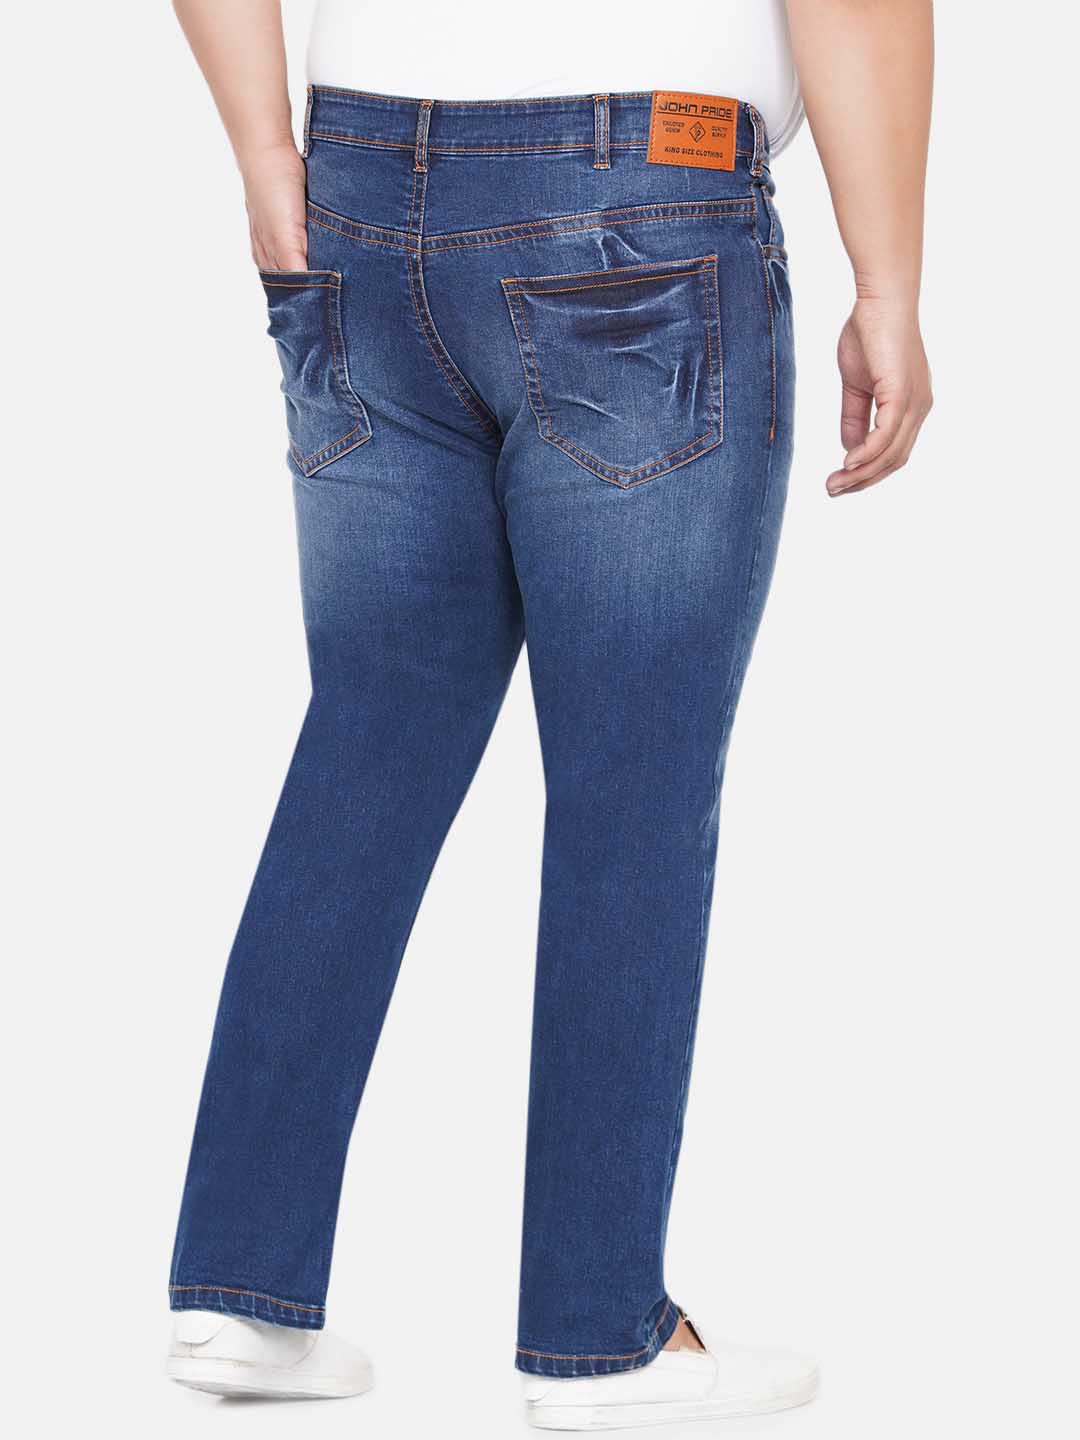 bottomwear/jeans/JPJ12238/jpj12238-5.jpg